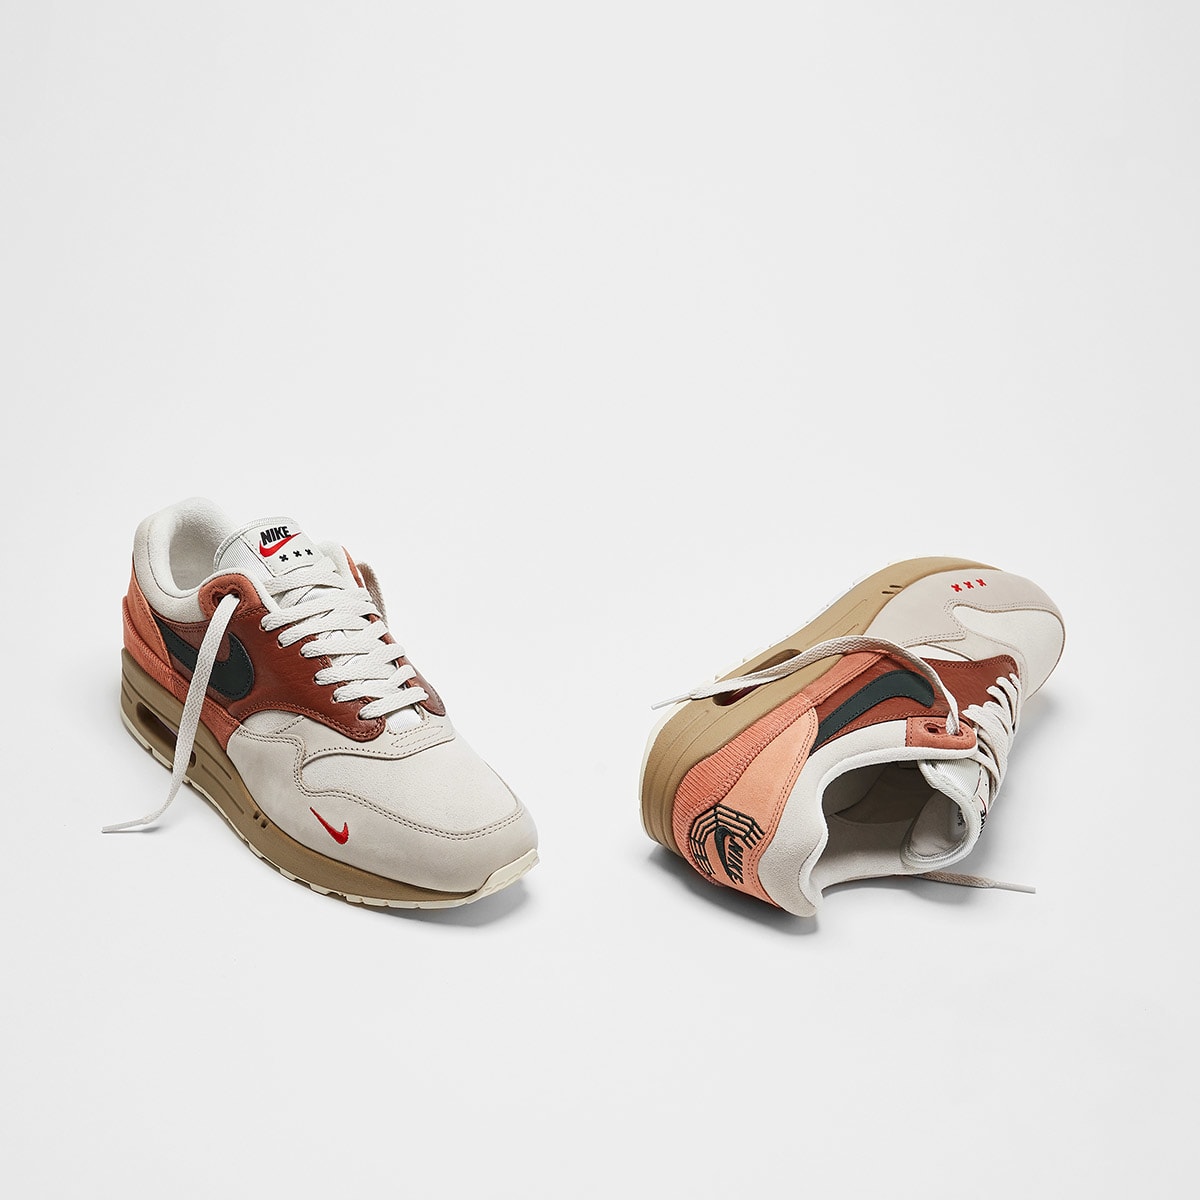 Nike Air Max 1 Amsterdam (Red, Khaki & Peach) | END. Launches